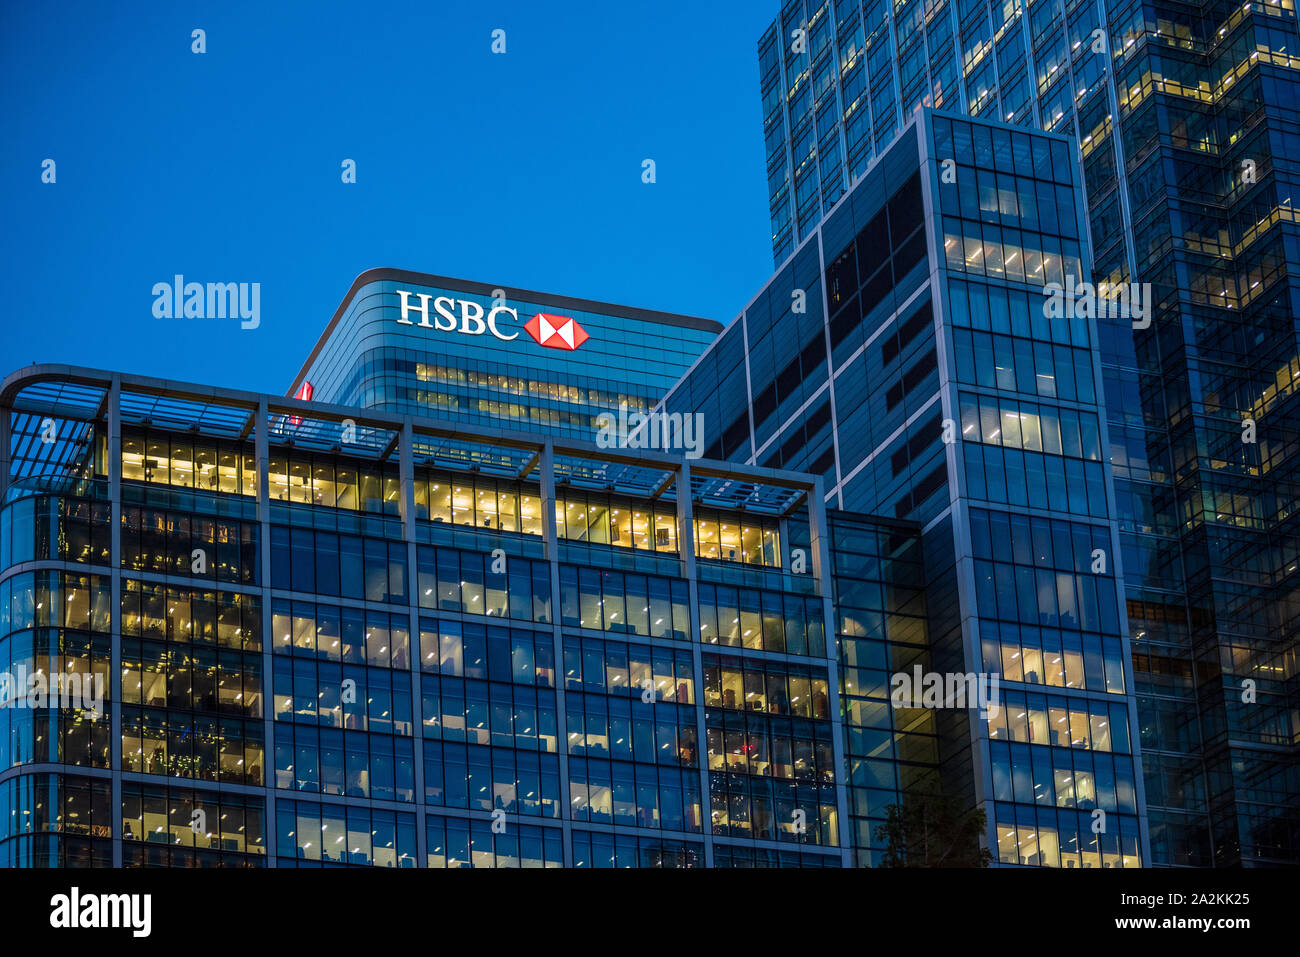 La tour HSBC Canary Wharf - la tour HSBC apparaît au-dessus d'autres bâtiments des services financiers in London's Canary Wharf Banque D'Images